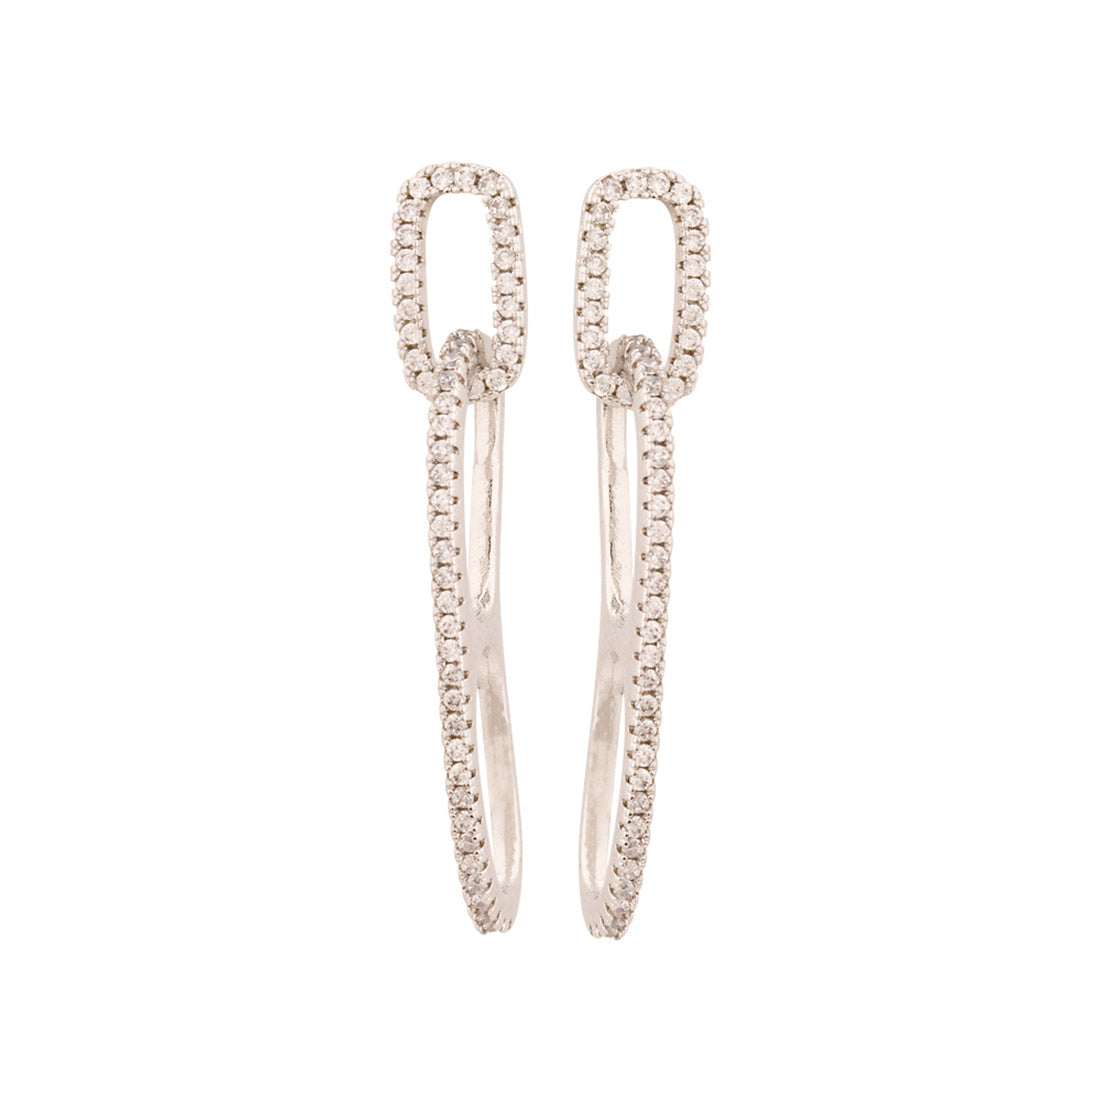 Gems Adorned Link Design Earrings